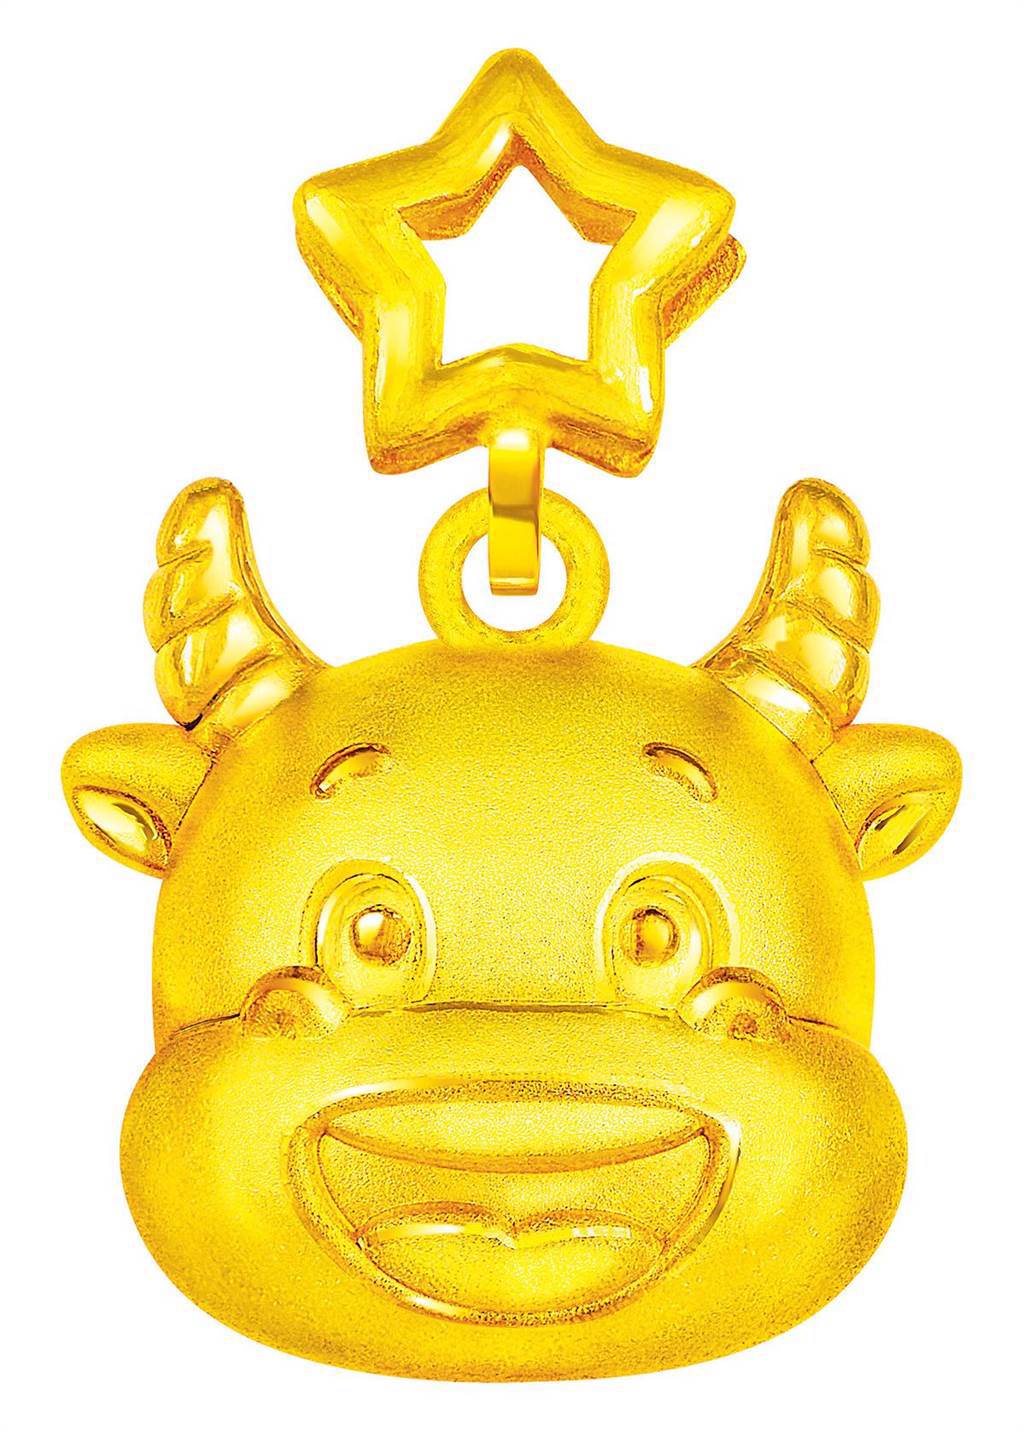 周大福在中國年主打牛年「金牛送福」為主題的金飾和黃金擺件，生肖金飾9900元起。（周大福提供）